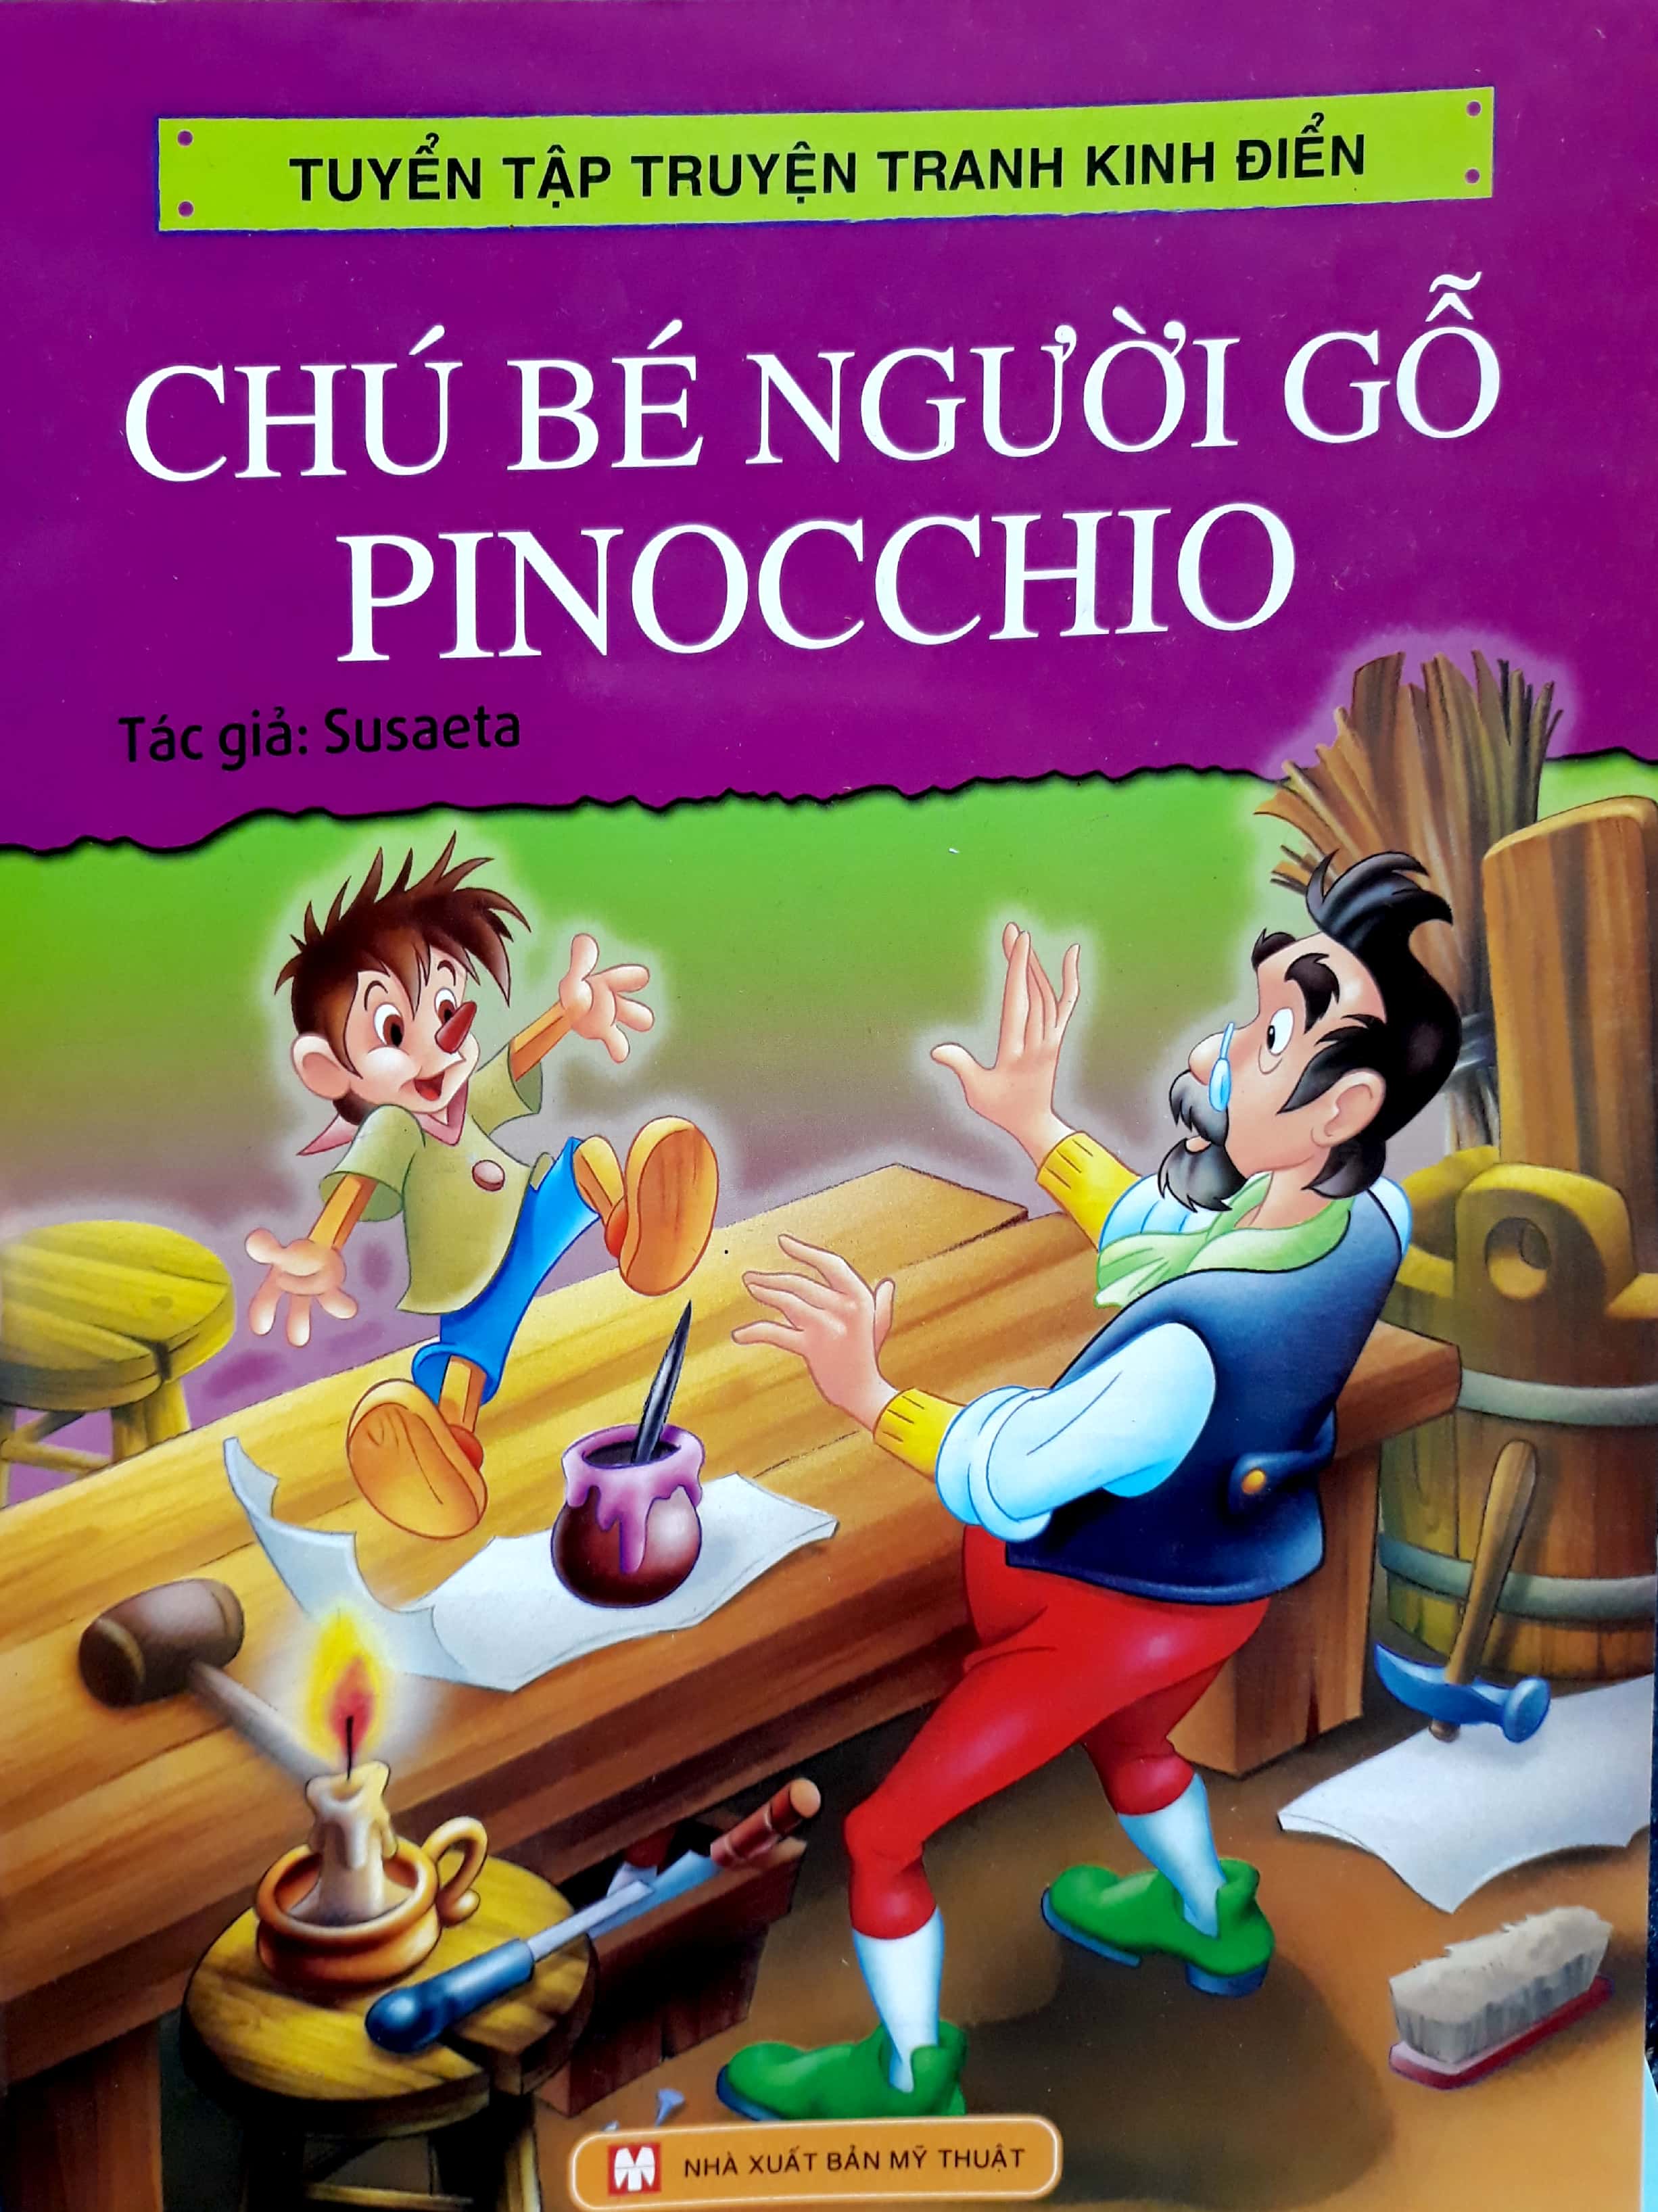 Tuyển Tập Truyện Tranh Kinh Điển - Chú Bé Người Gỗ Pinocchio